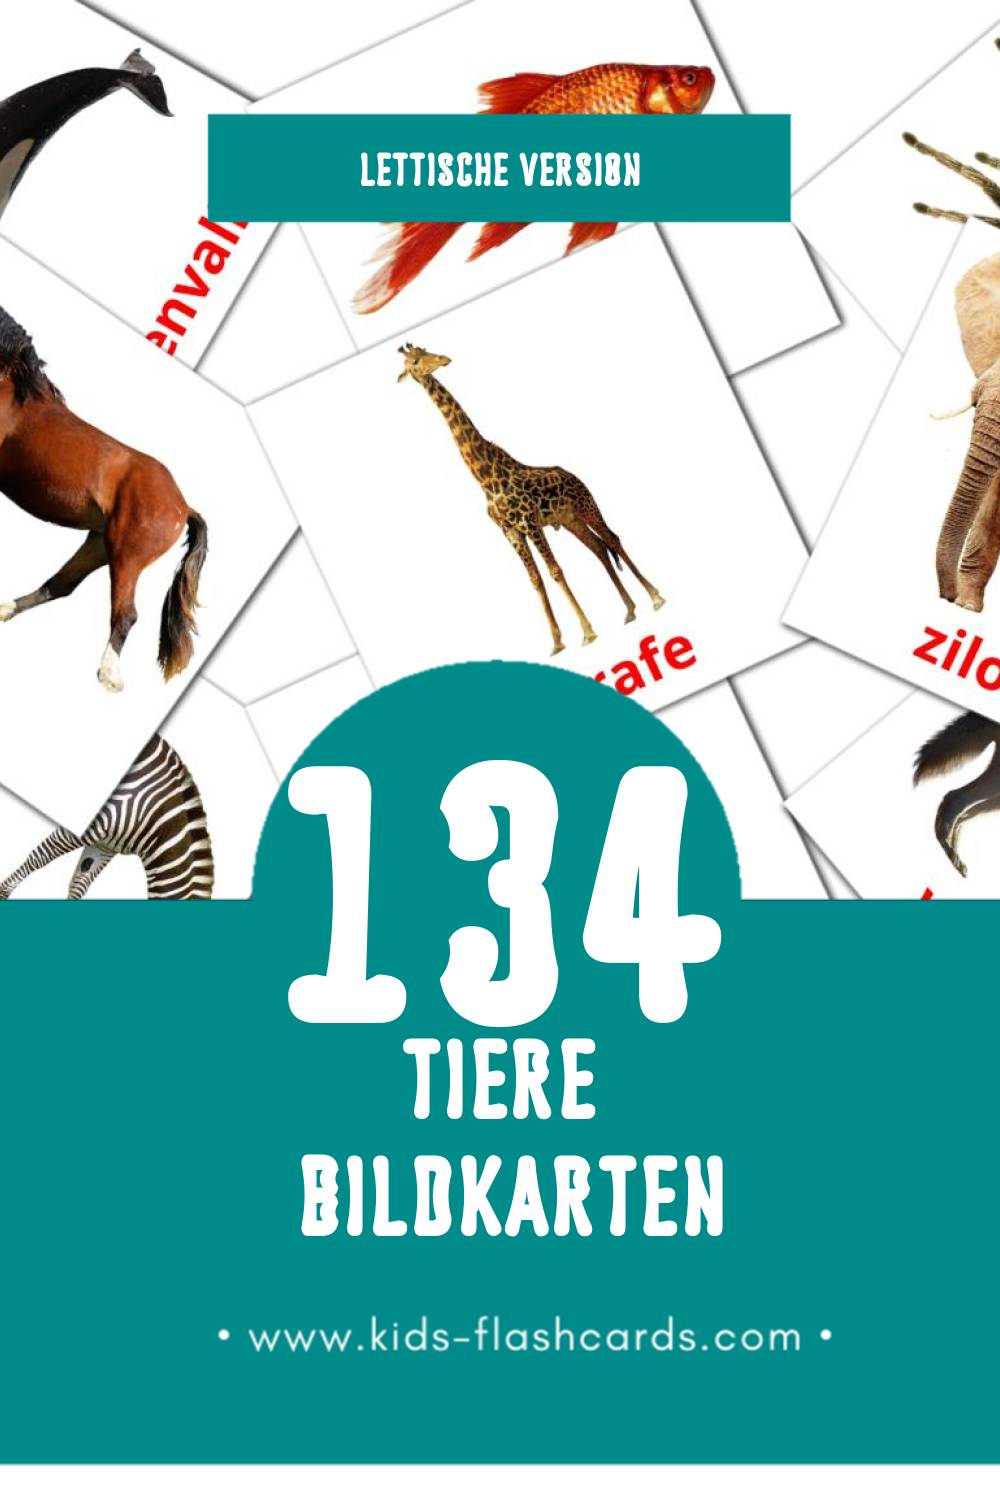 Visual dzīvnieki Flashcards für Kleinkinder (134 Karten in Lettisch)